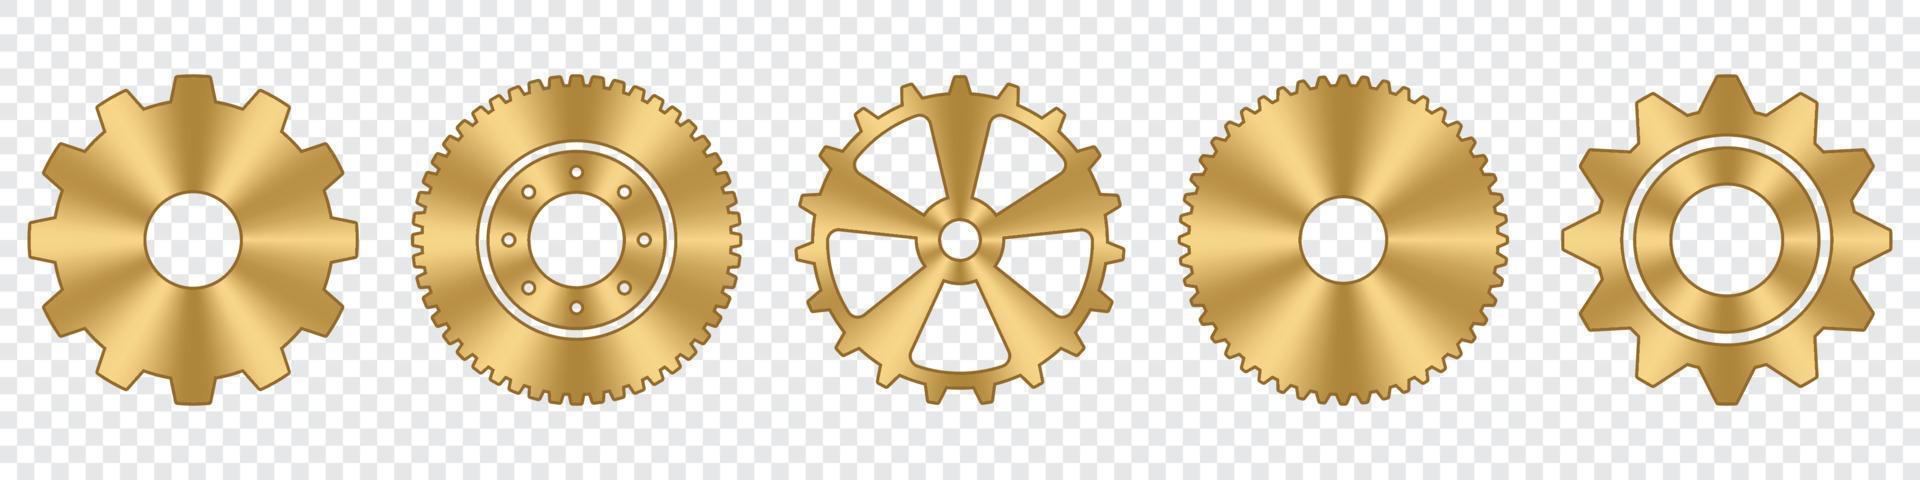 conjunto de ruedas dentadas. colección de ruedas dentadas de metal dorado. iconos industriales. conjunto de iconos de vector de configuración de engranajes. ilustración vectorial